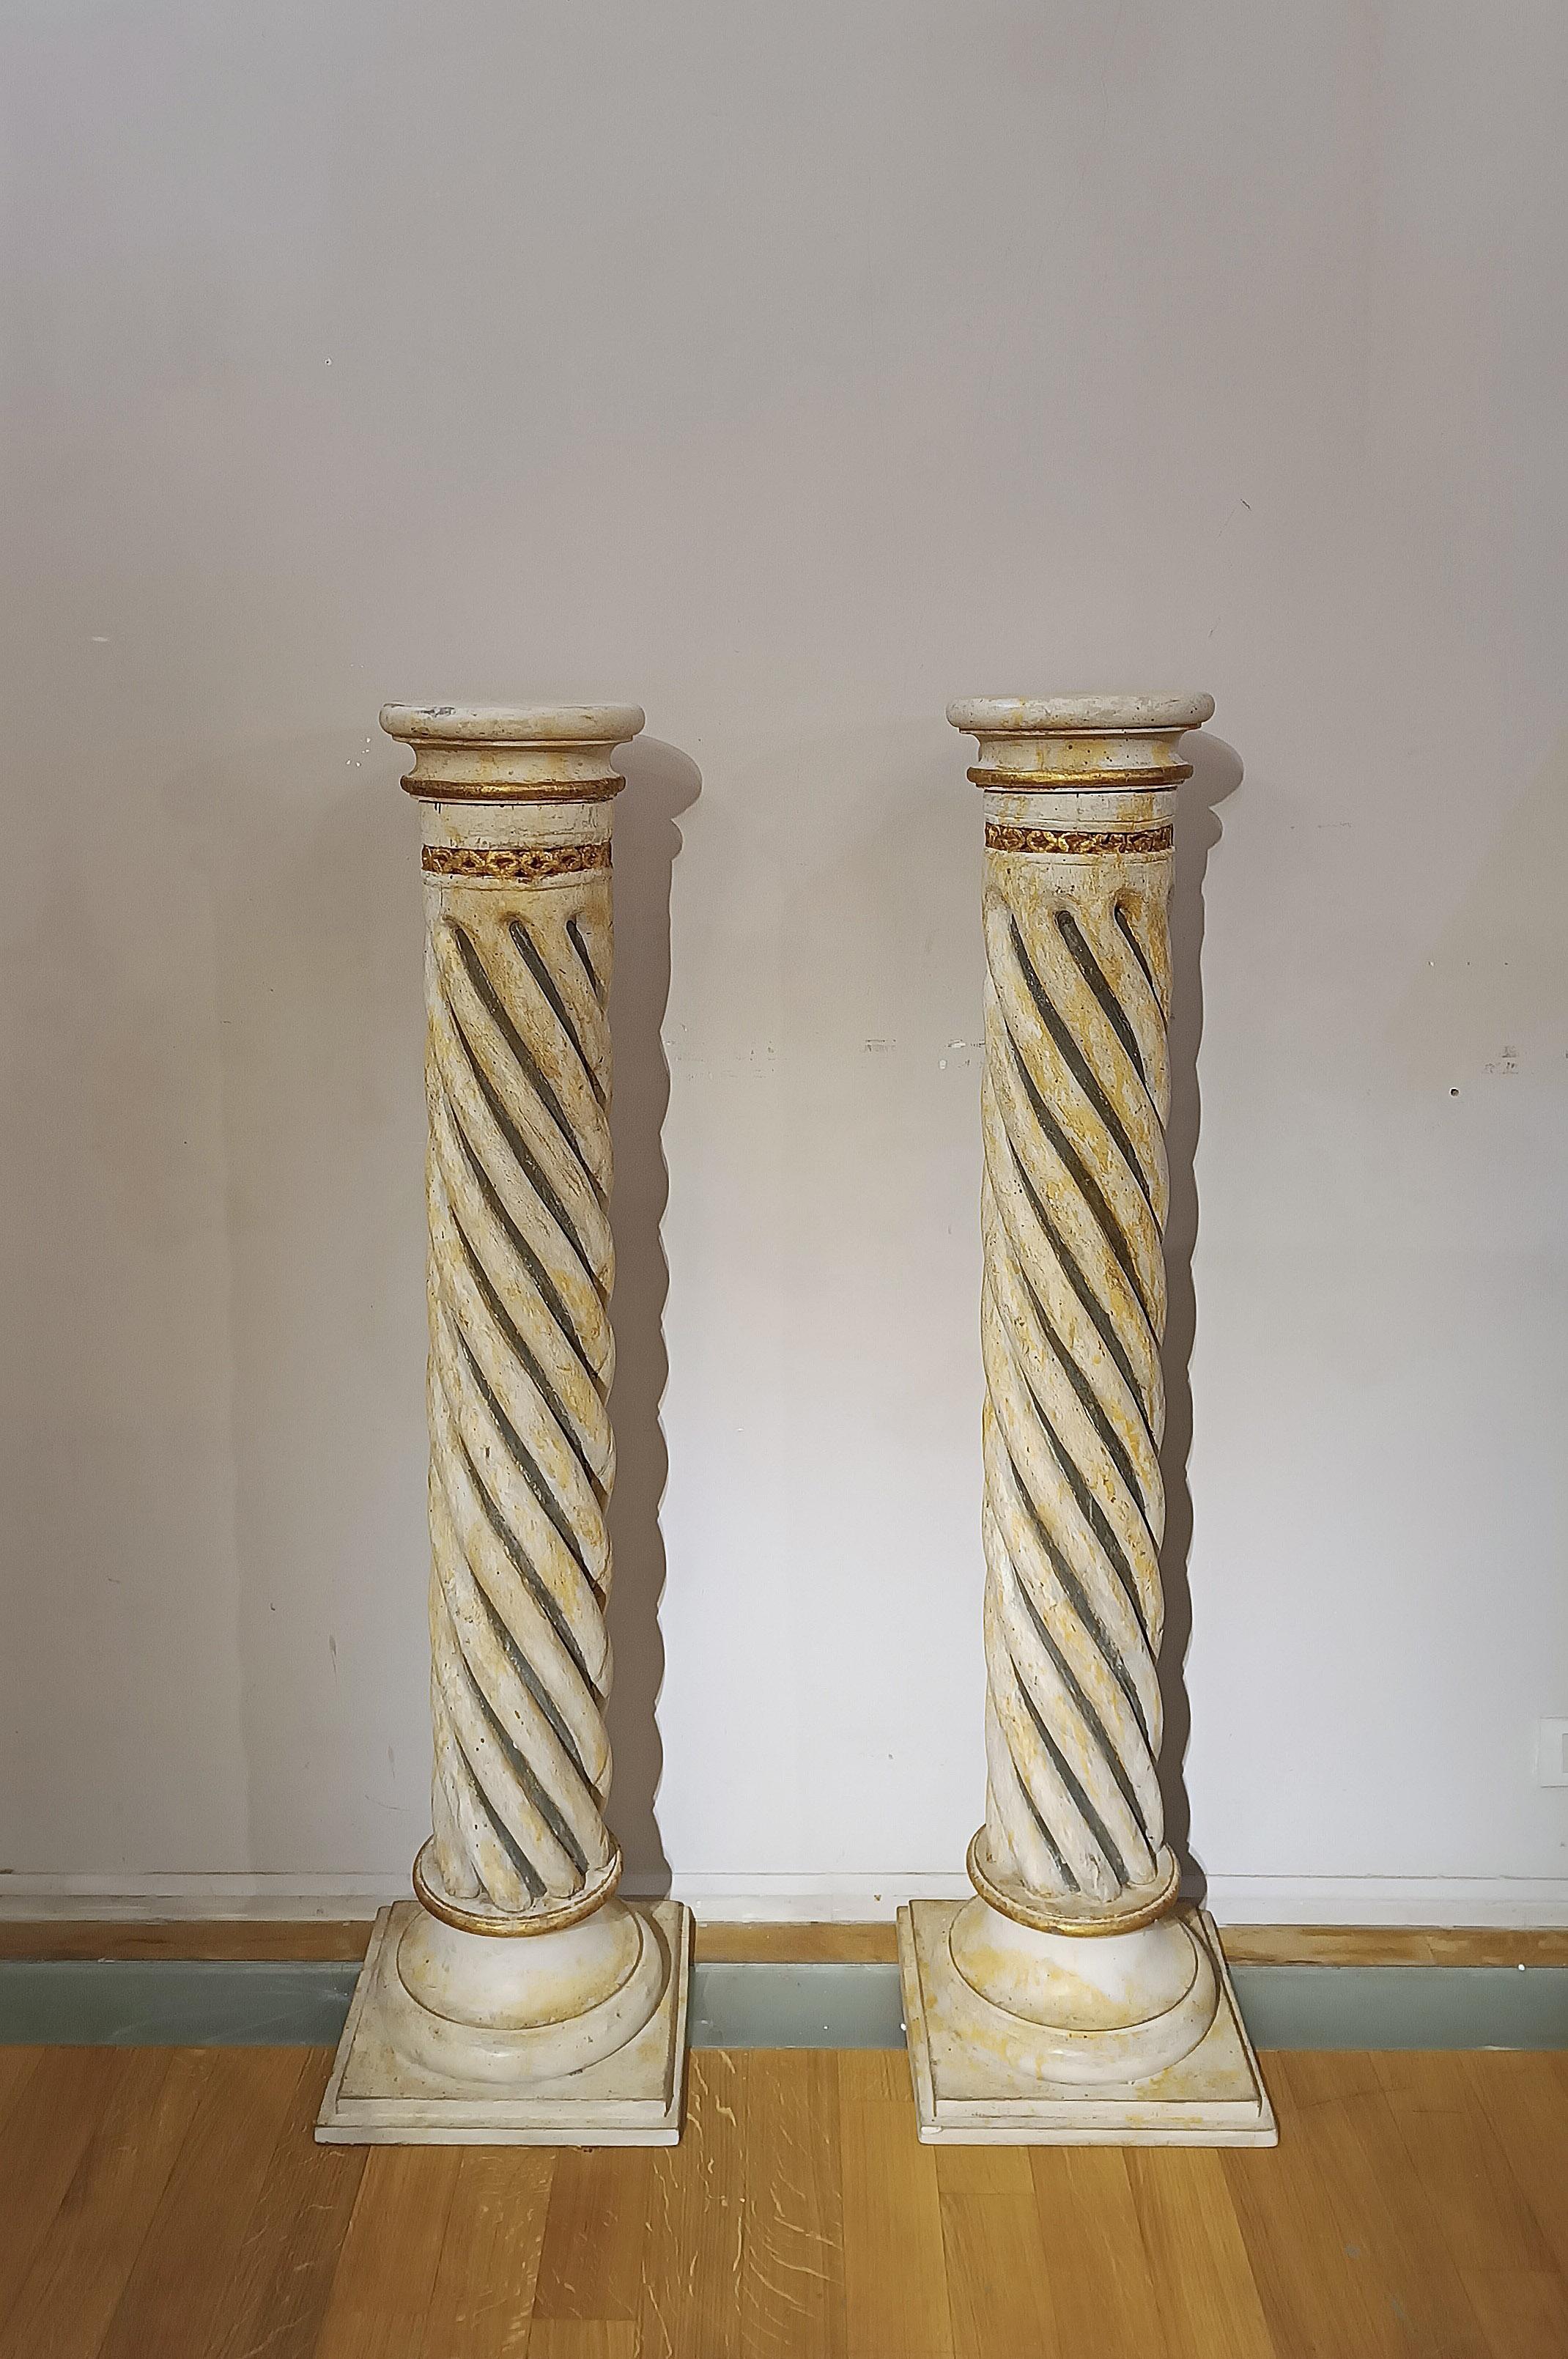 Paar gedrehte Holzsäulen, fein geschnitzt und mit einem schwarz-gelben Duoton bemalt. Die Säulen sind mit einer reinen Blattvergoldung versehen, wobei die Details wie der letzte Stier und der obere Teil mit geometrischen Schnitzereien verziert sind.